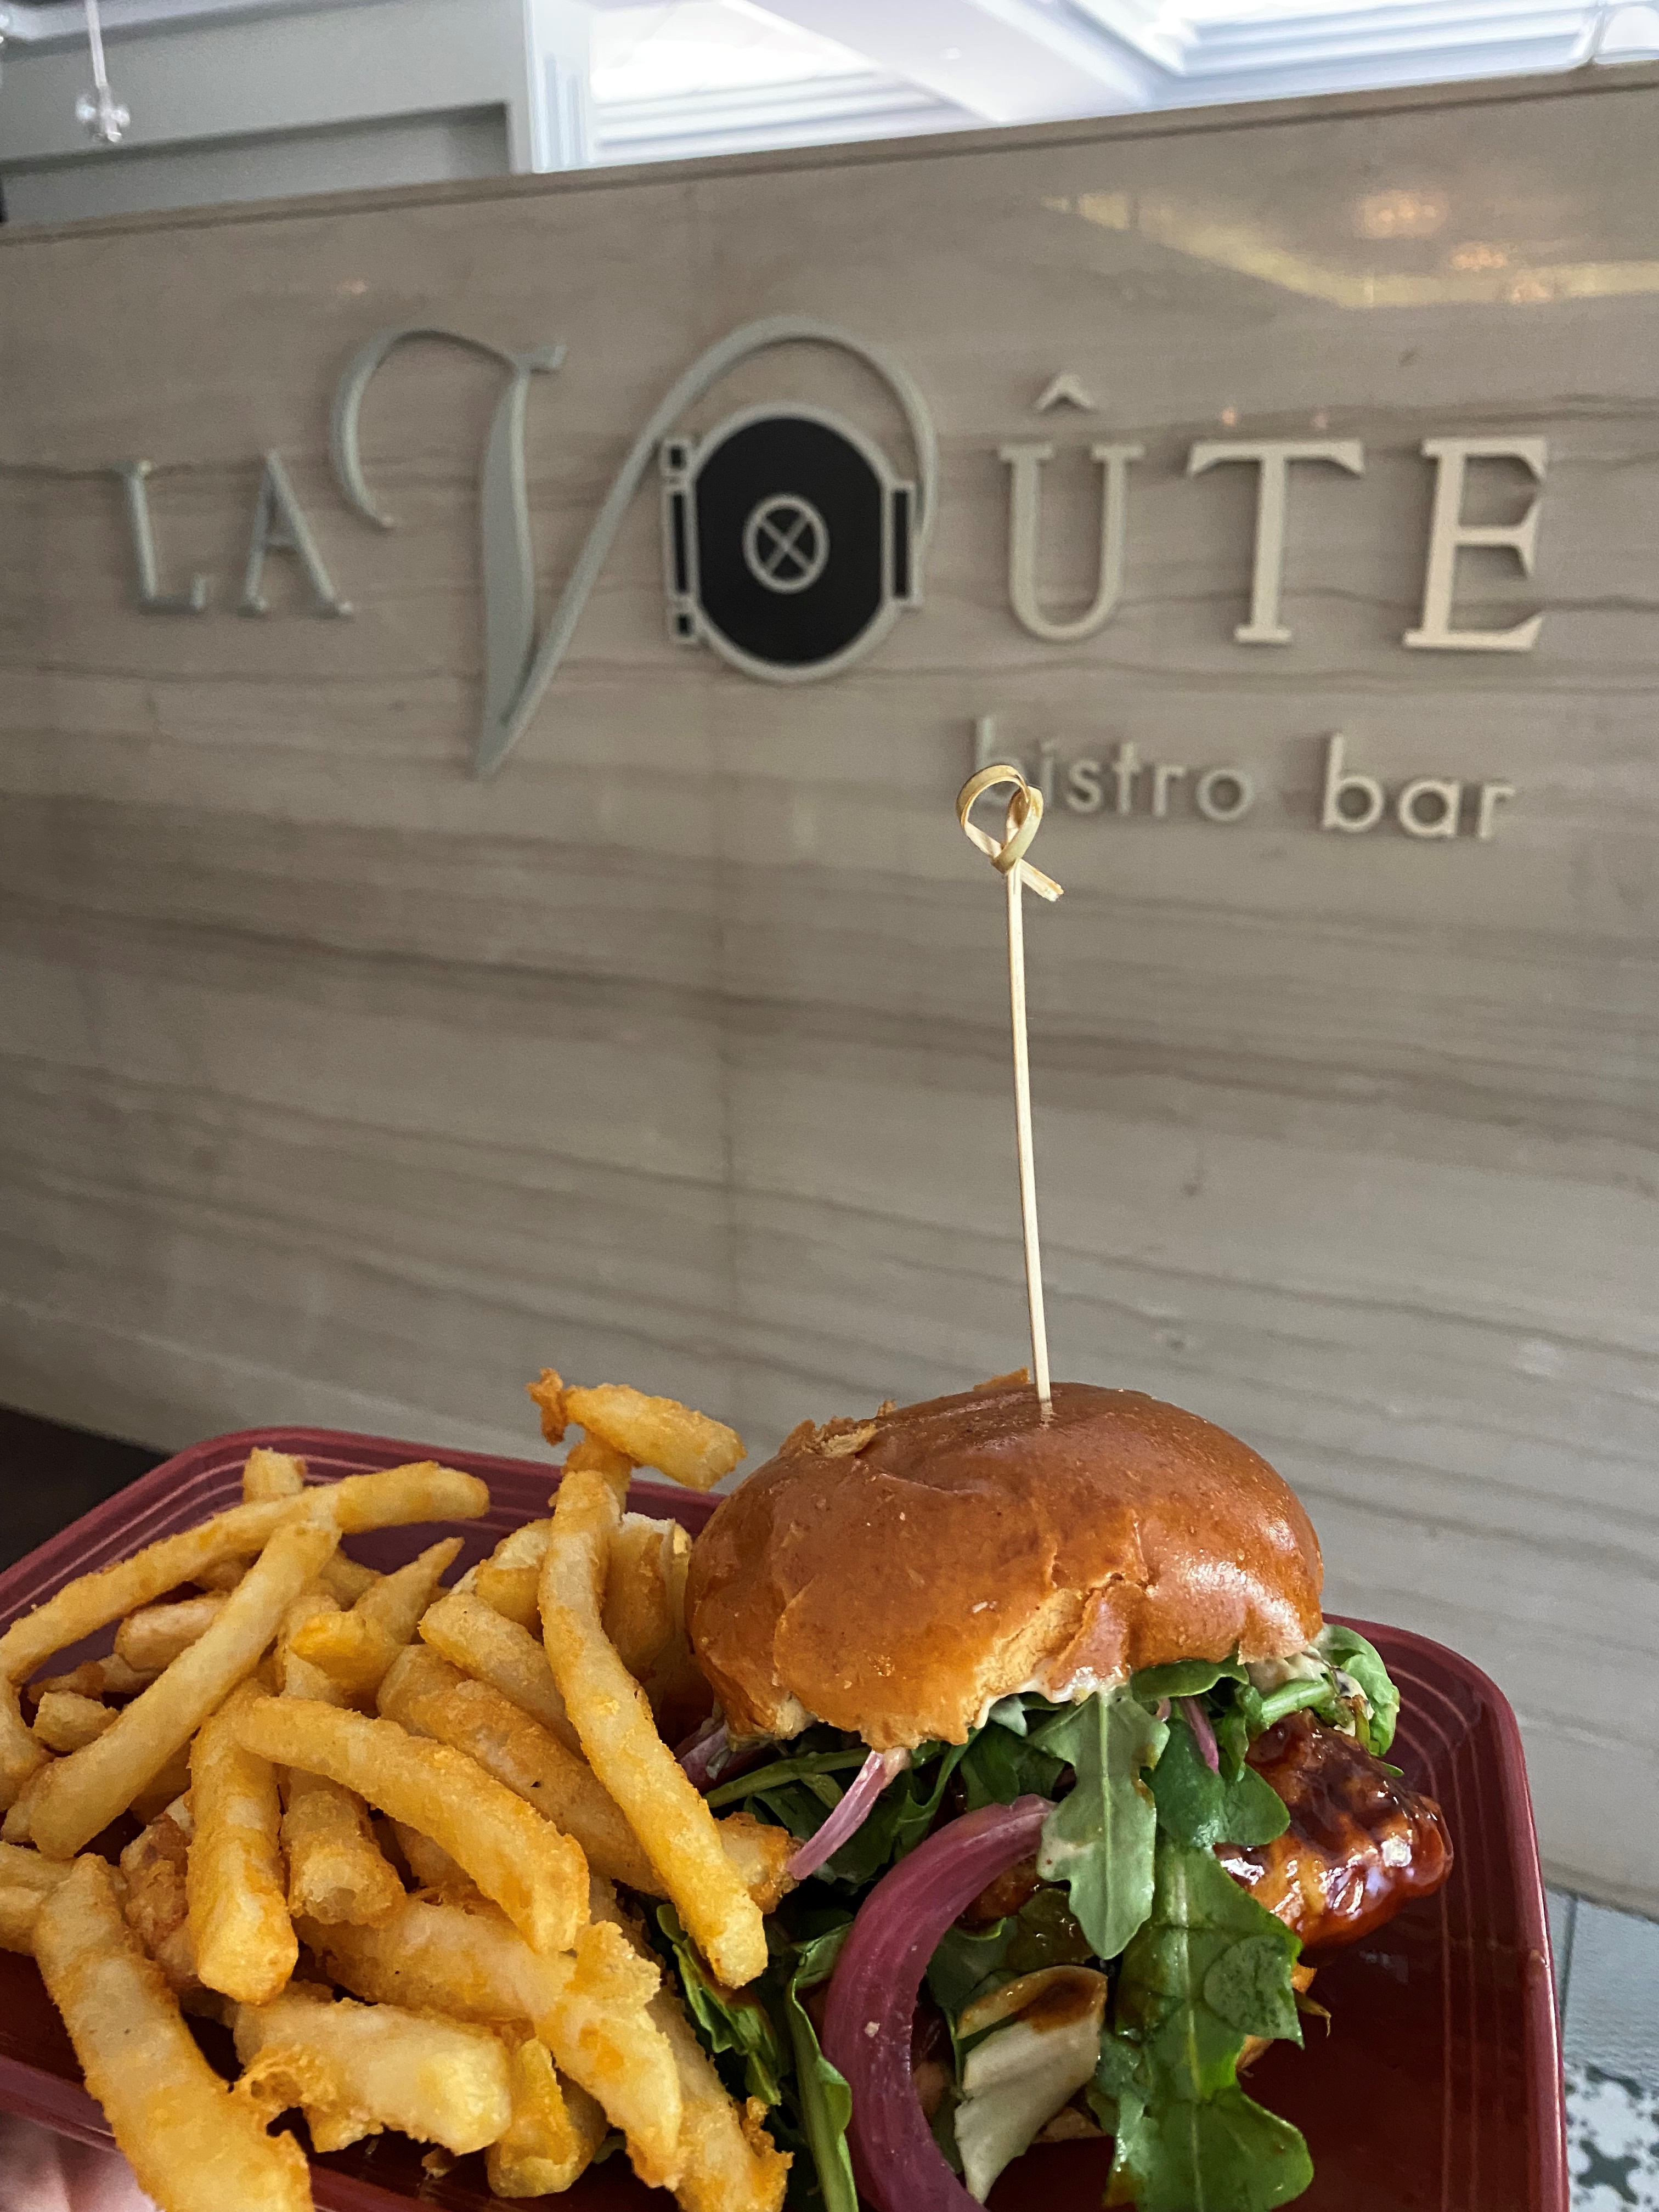 La-Voute-burger.jpg